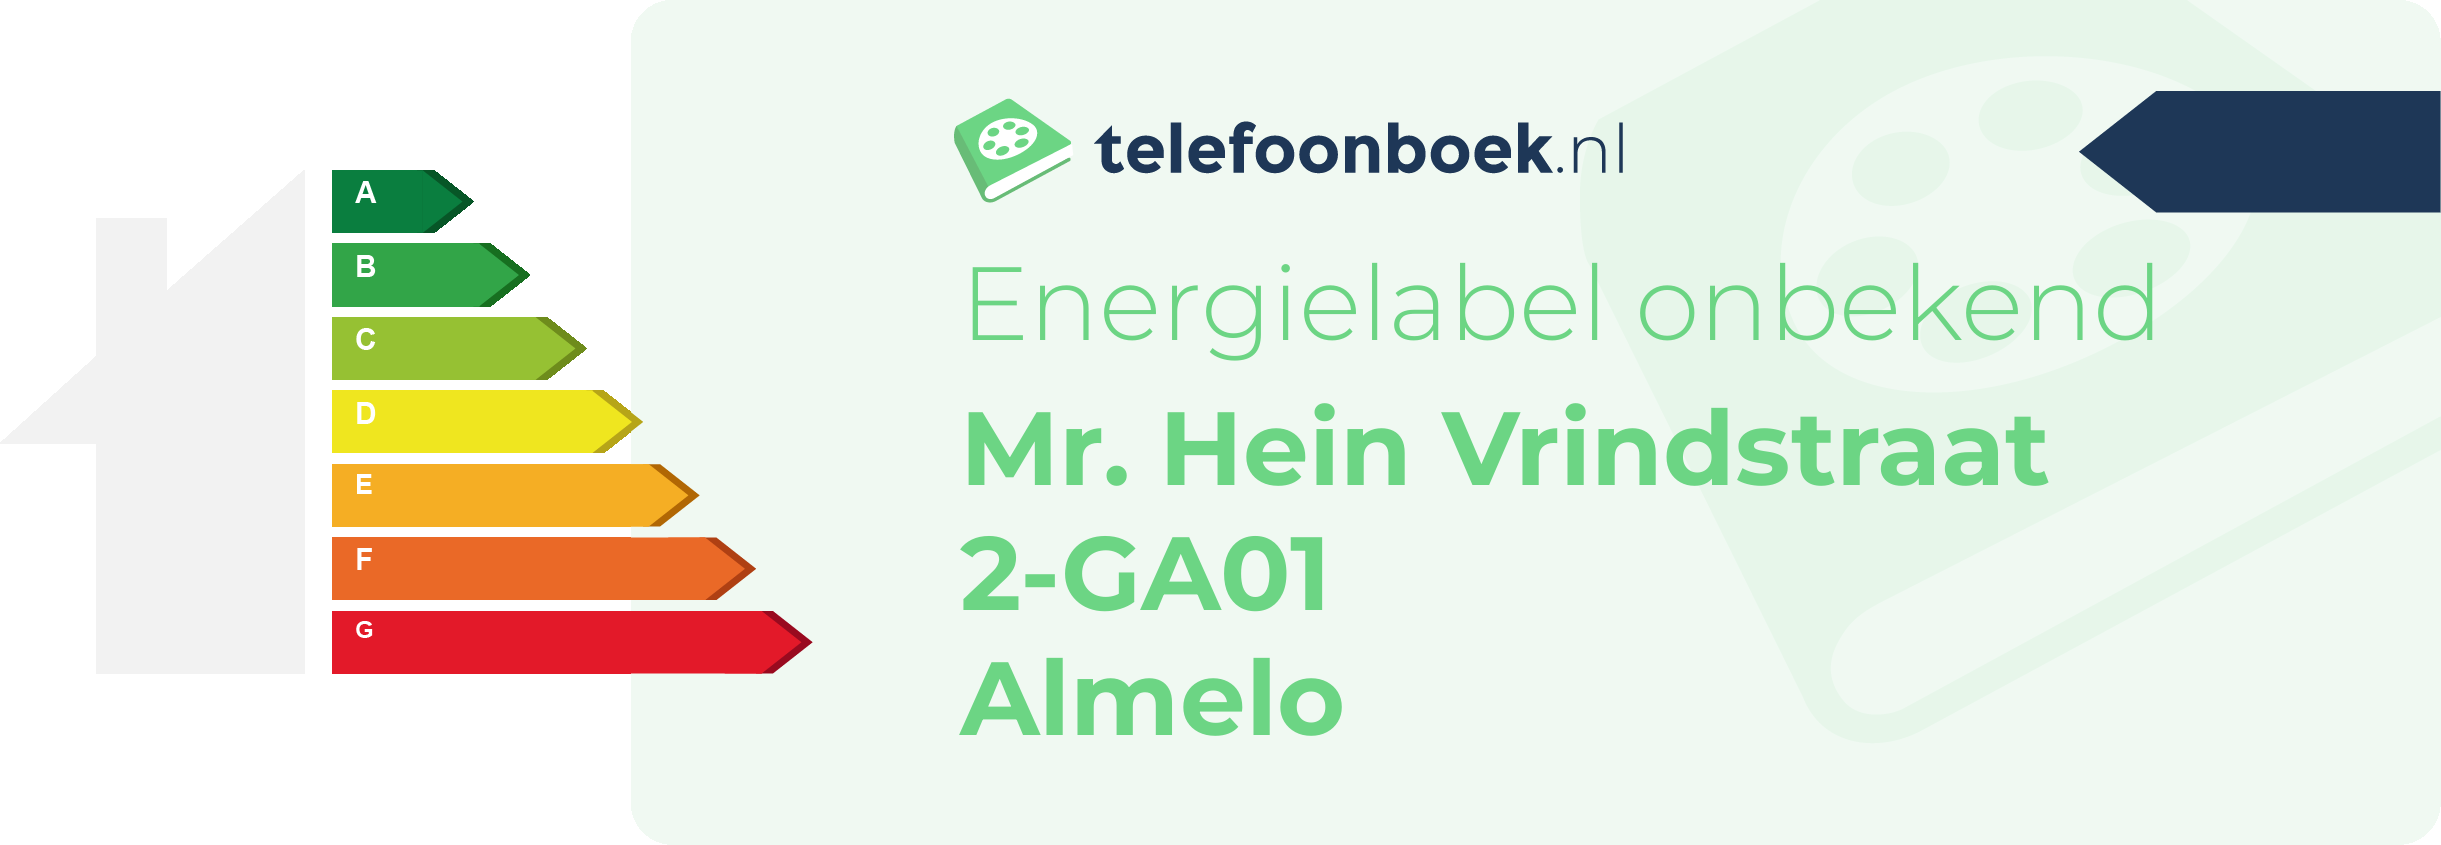 Energielabel Mr. Hein Vrindstraat 2-GA01 Almelo